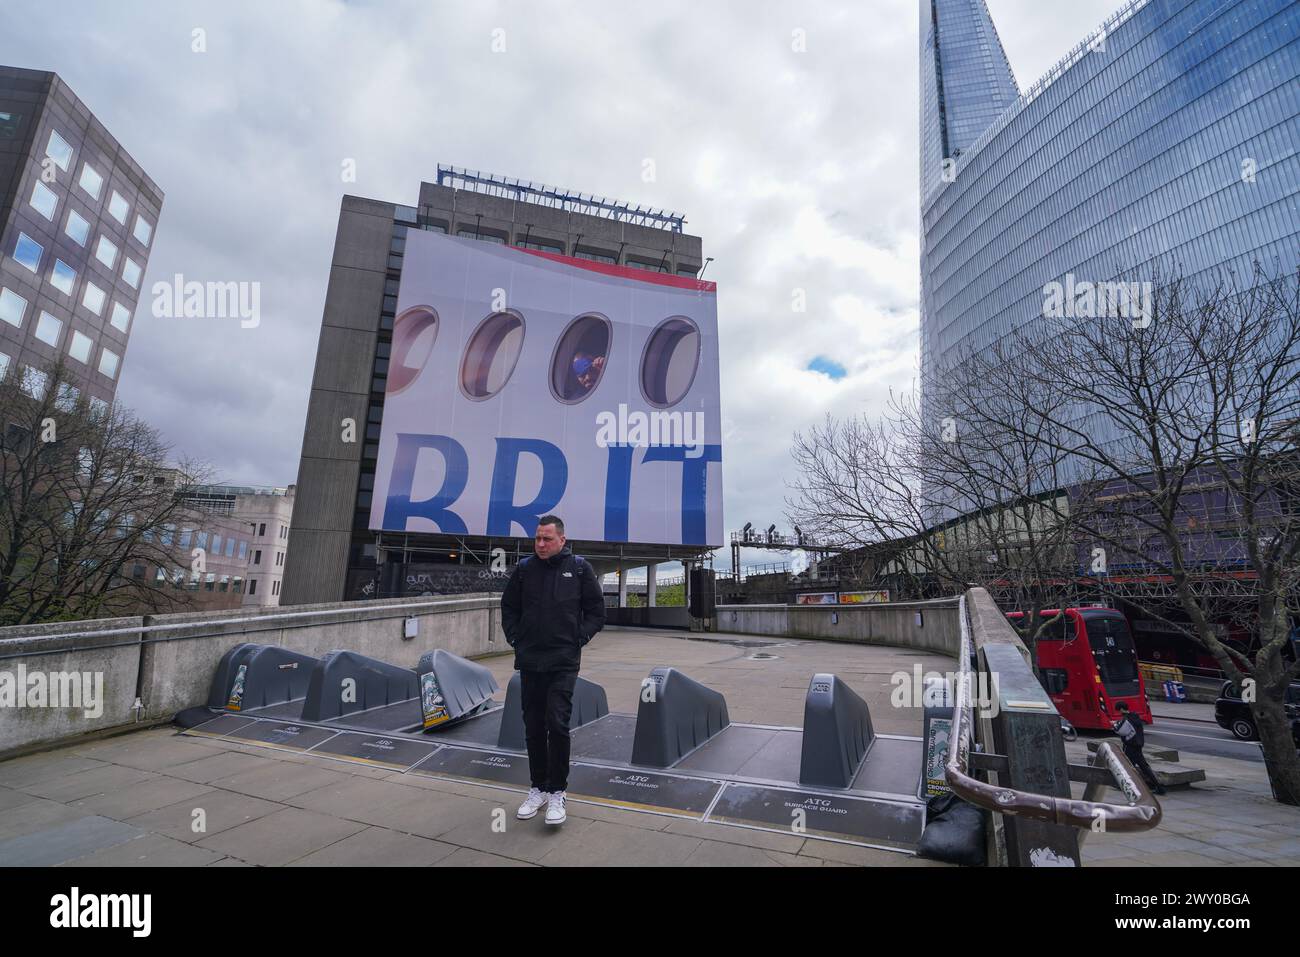 London 3 April 2024 . Ein großes Werbeplakat ziert die Fassade eines Gebäudes in der London Bridge mit einem Passagier, der aus einem Flugzeugfenster über das Wort „BRIT“ blickt, als Teil der neuen British Airways Kampagne Credit: amer ghazzal/Alamy Live News Stockfoto